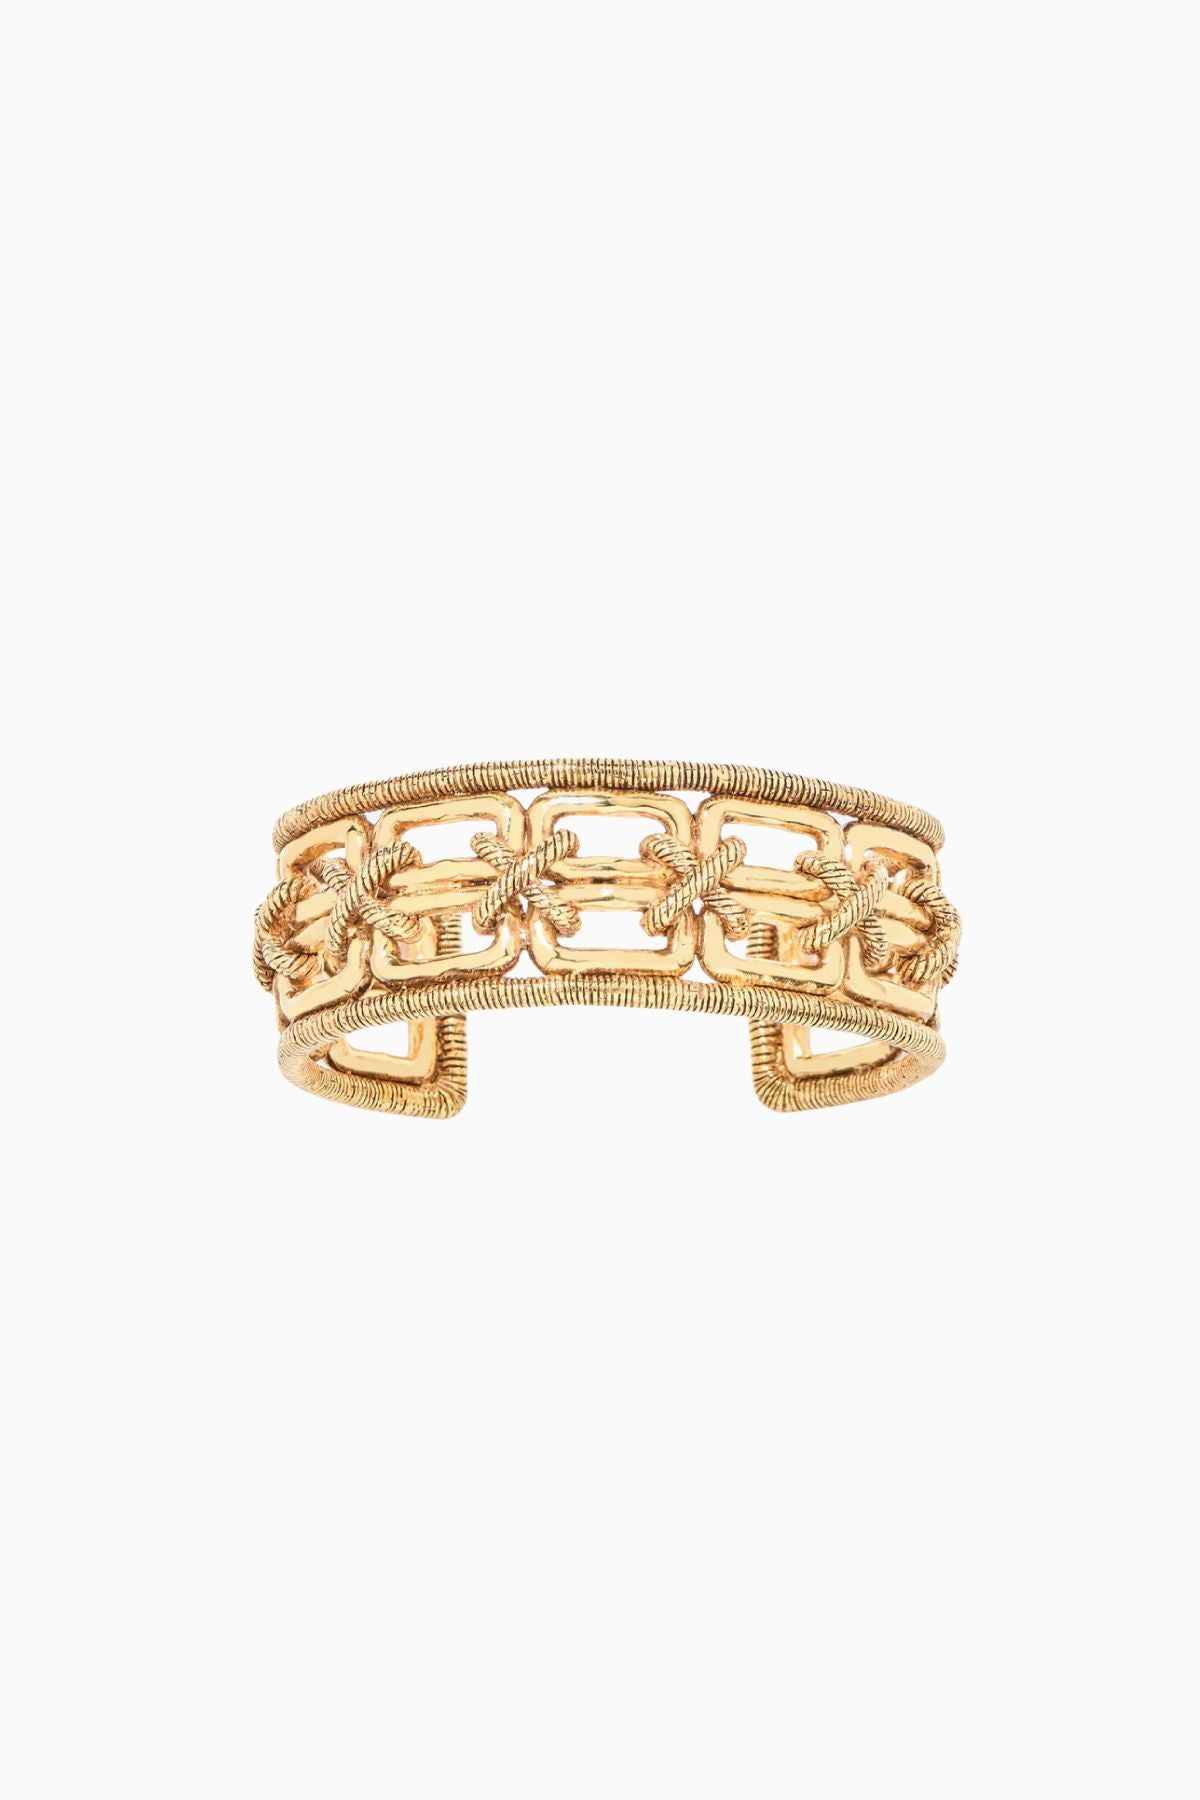 Aurelie Bidermann Caliche Bracelet - Gold